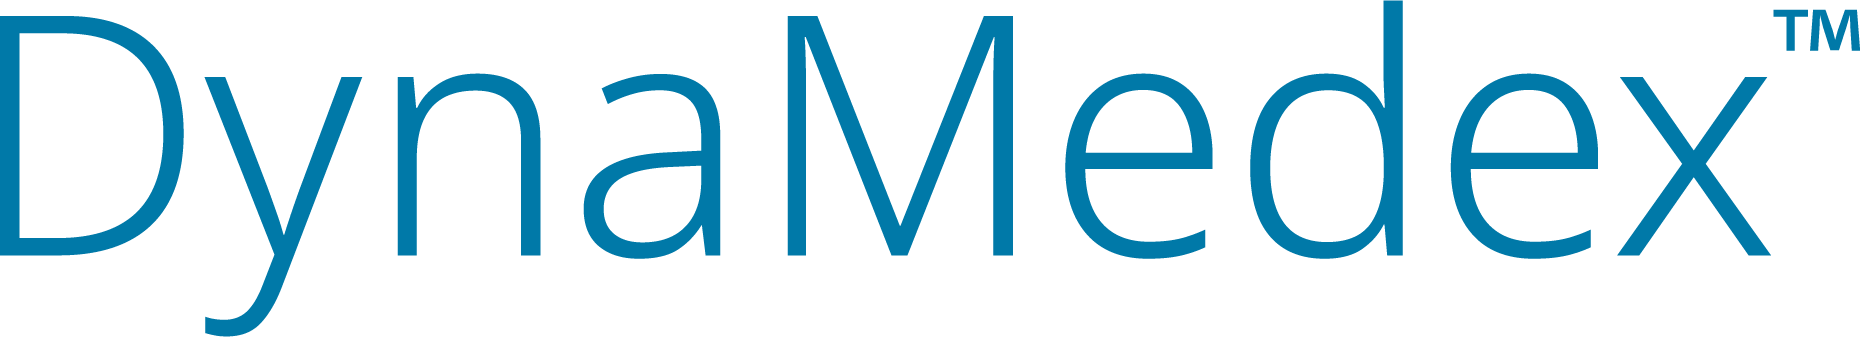 dynamedex logo color TM    